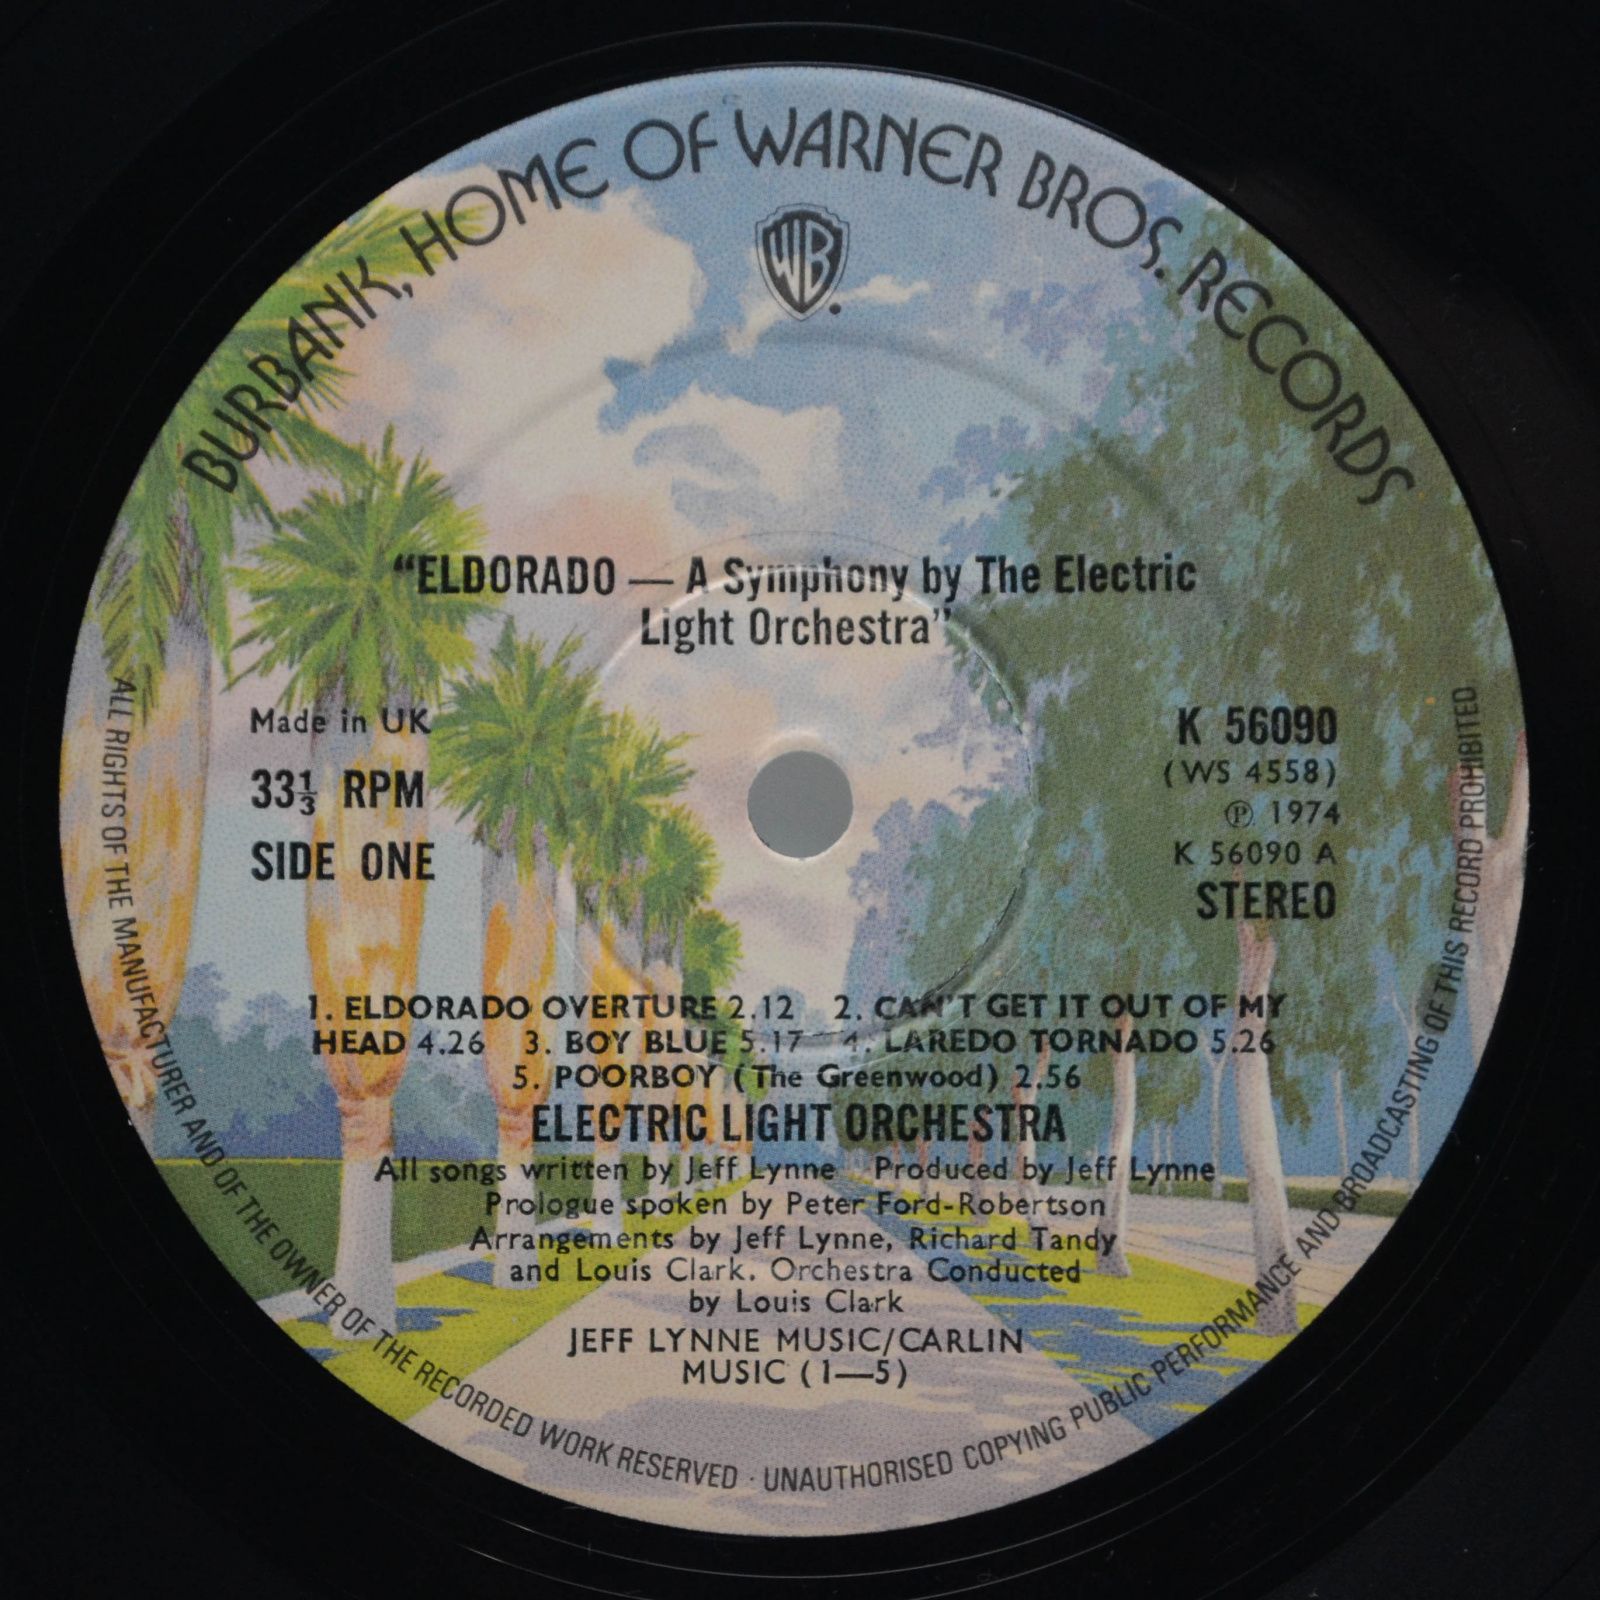 Electric Light Orchestra — Eldorado - A Symphony By The Electric Light Orchestra (1-st, UK), 1974